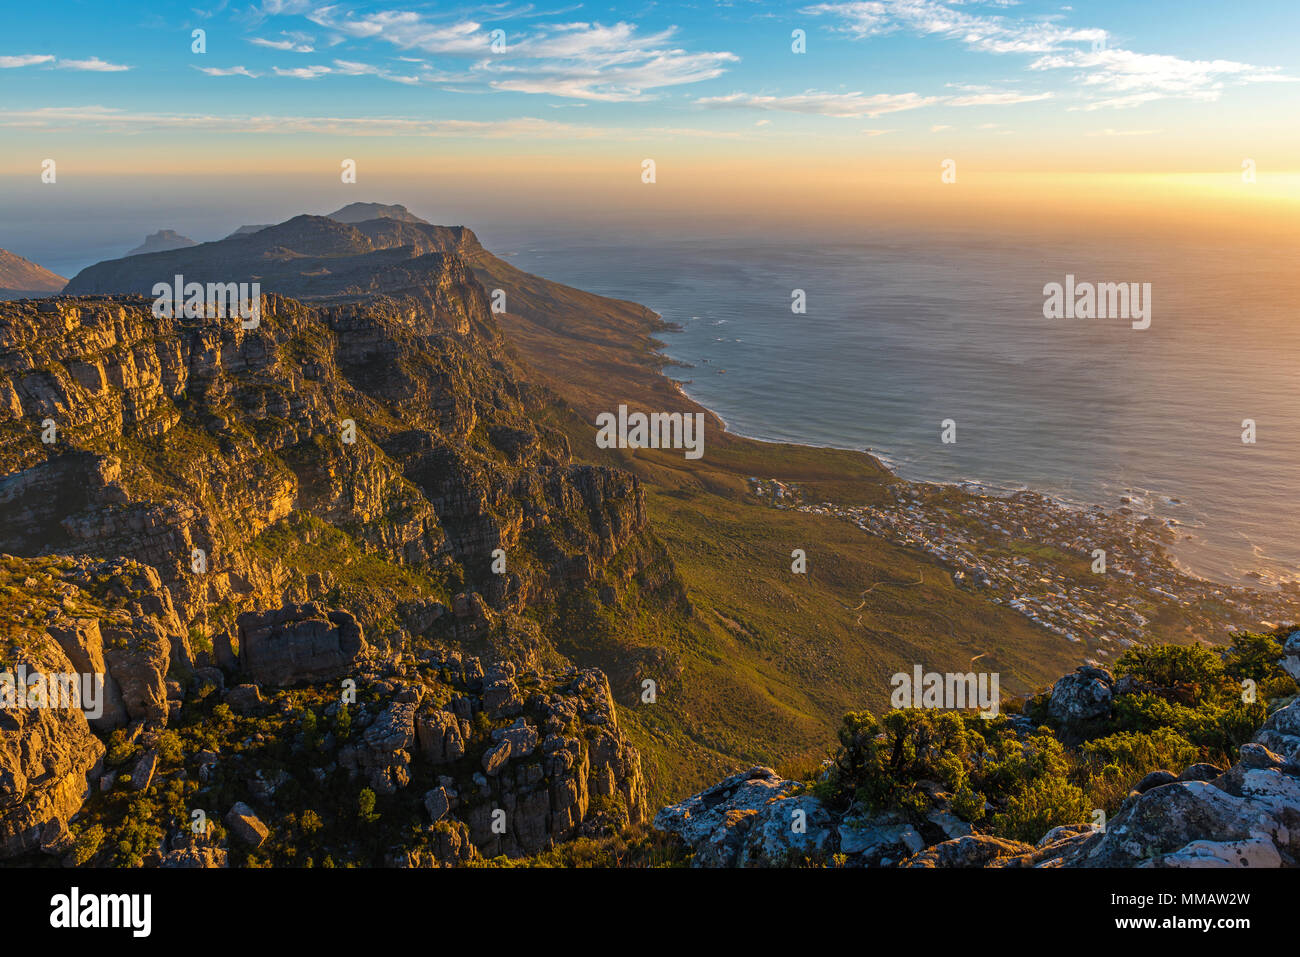 Vue aérienne de la ville du Cap le paysage urbain au coucher du soleil vu du parc national de Table Mountain en donnant un sens de l'infini, l'Afrique du Sud. Banque D'Images